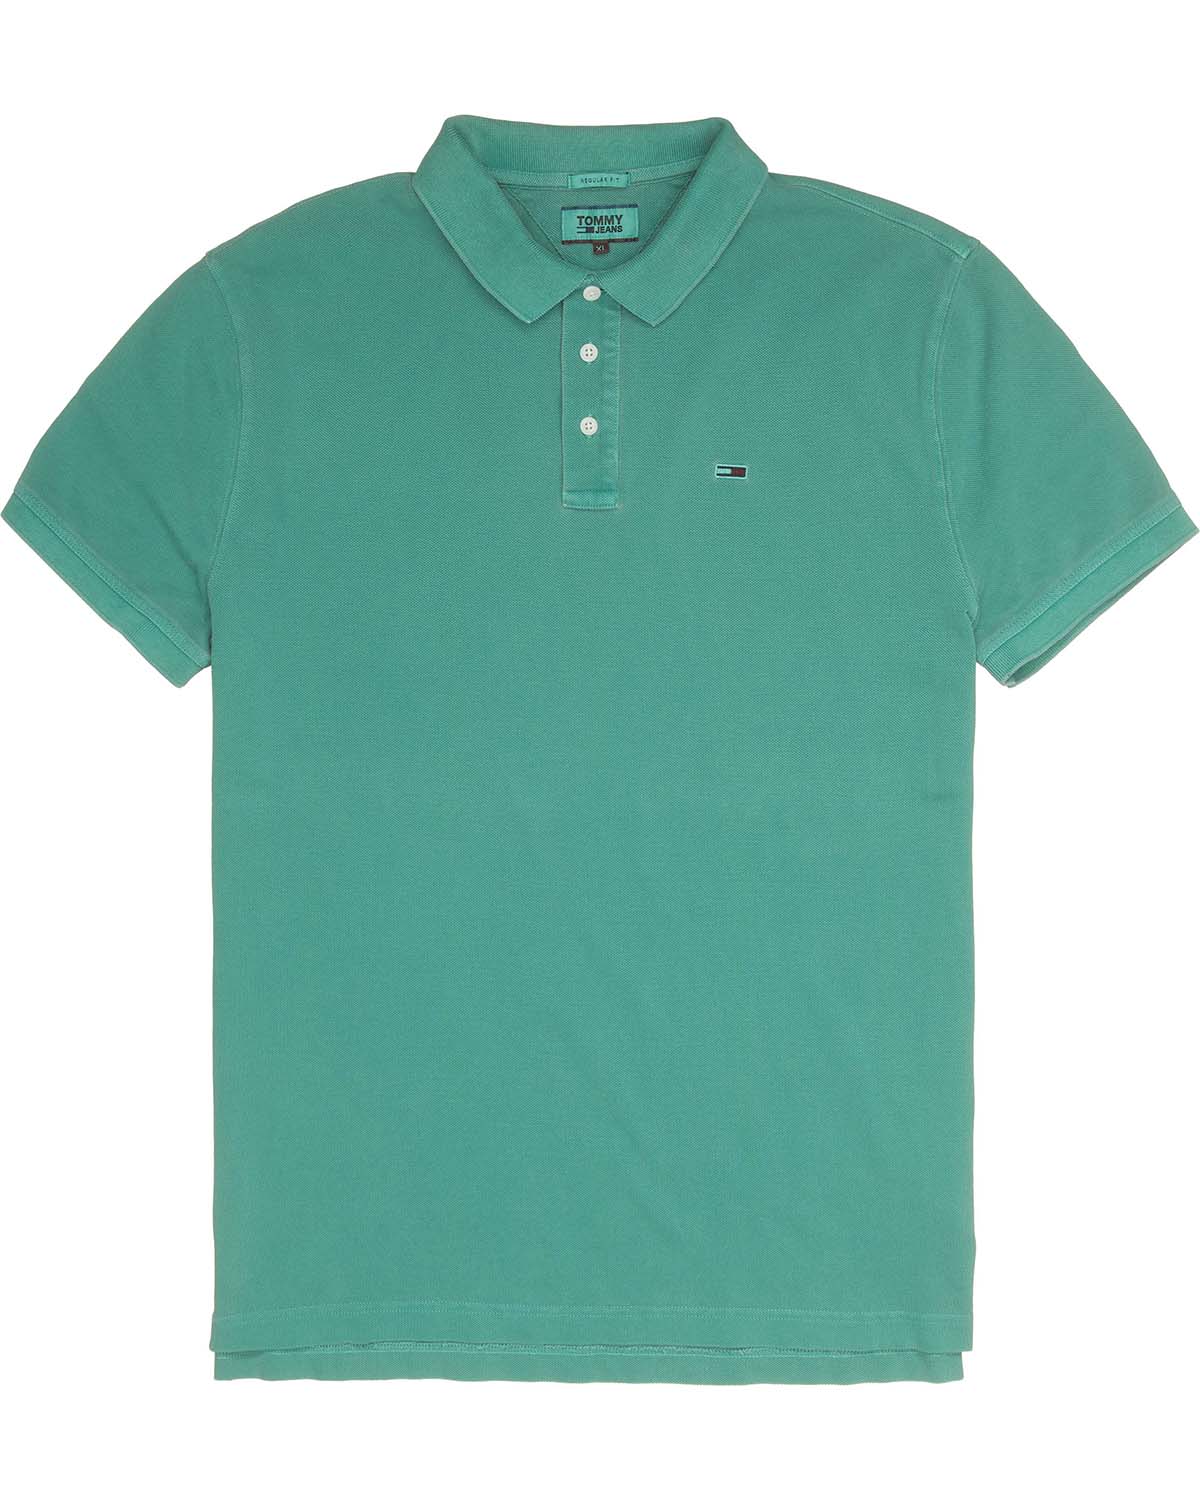 Men's Garment Dye Polo Shirt